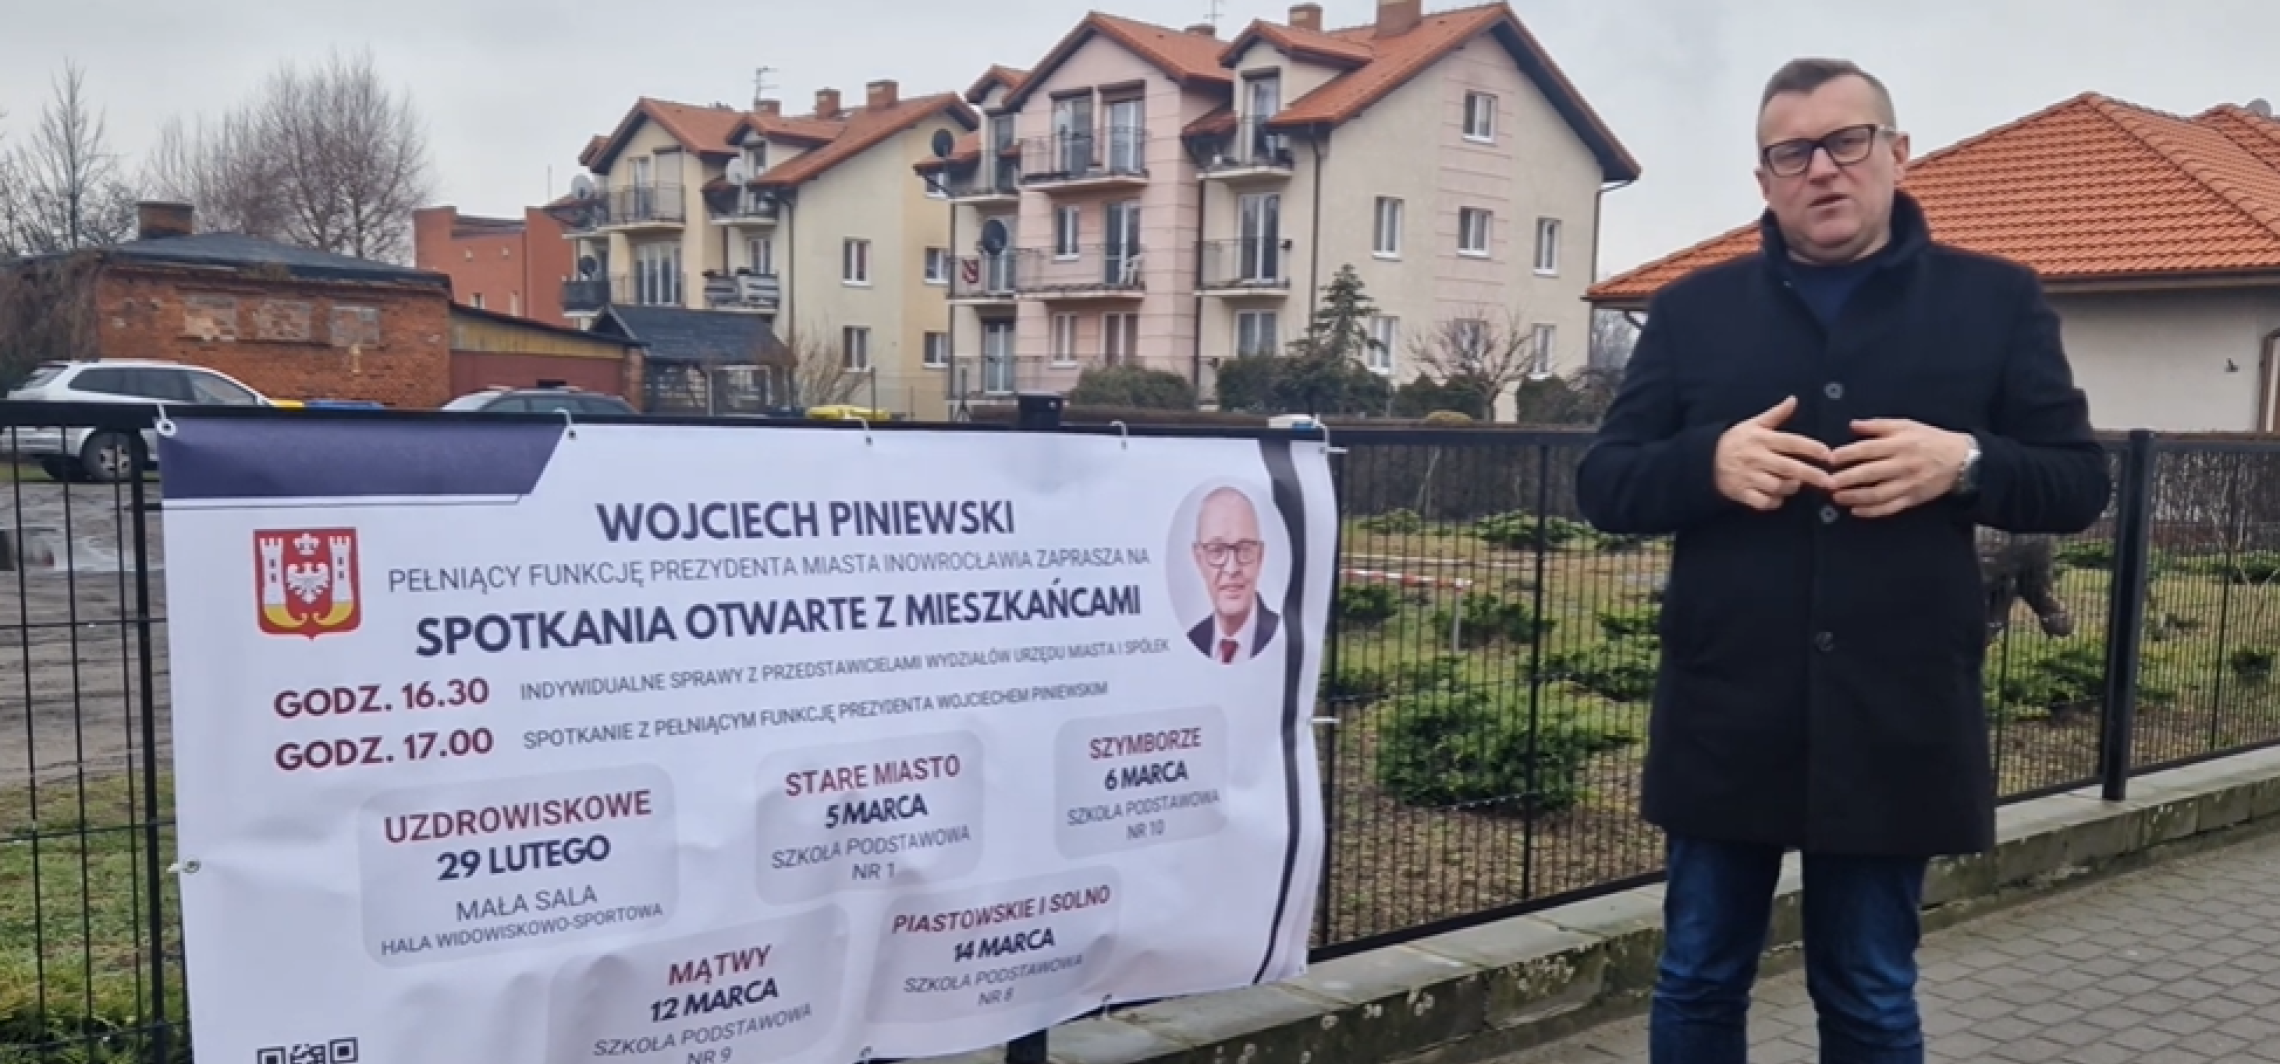 Inowrocław - Wroński uderza w Piniewskiego. Chodzi o spotkania otwarte